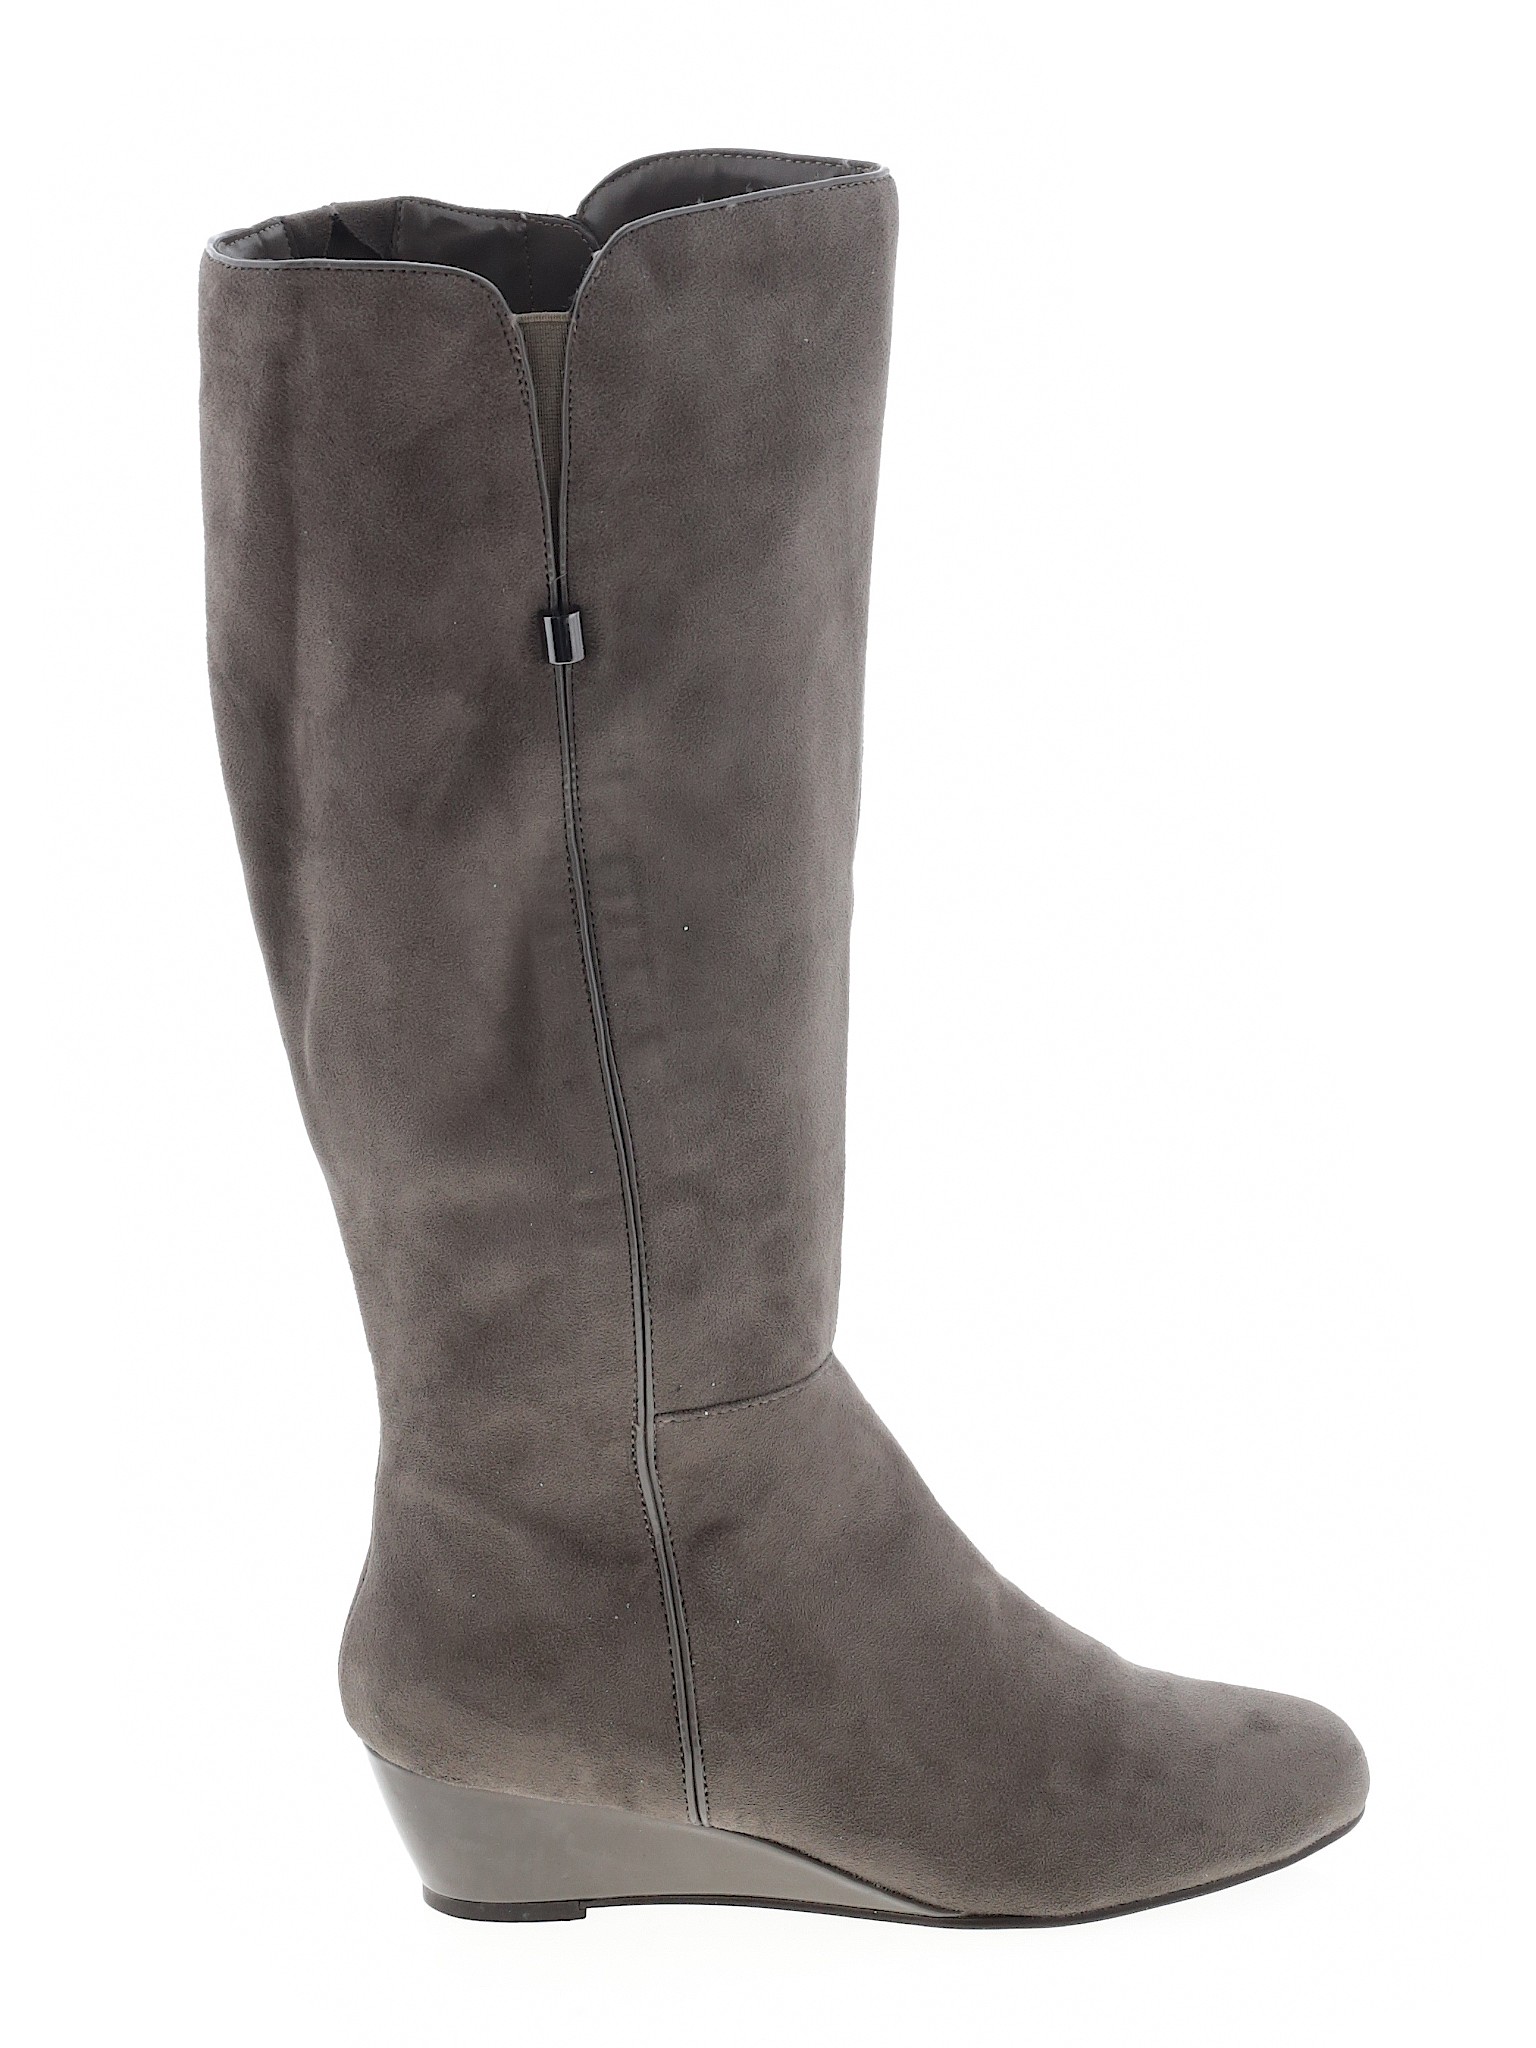 Impo Women Gray Boots US 9 | eBay